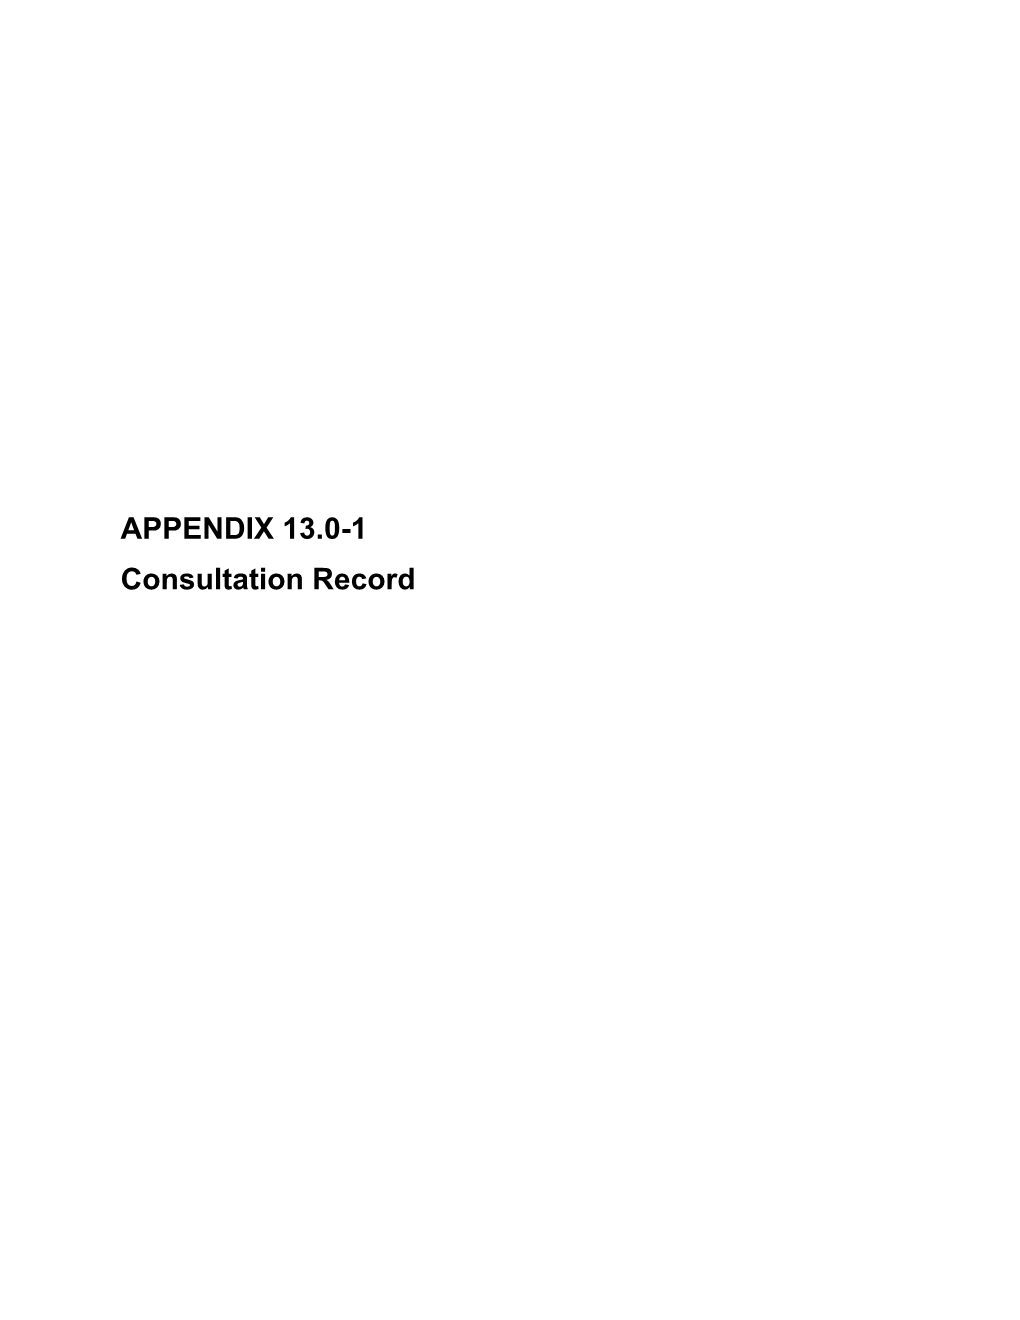 APPENDIX 13.0-1 Consultation Record